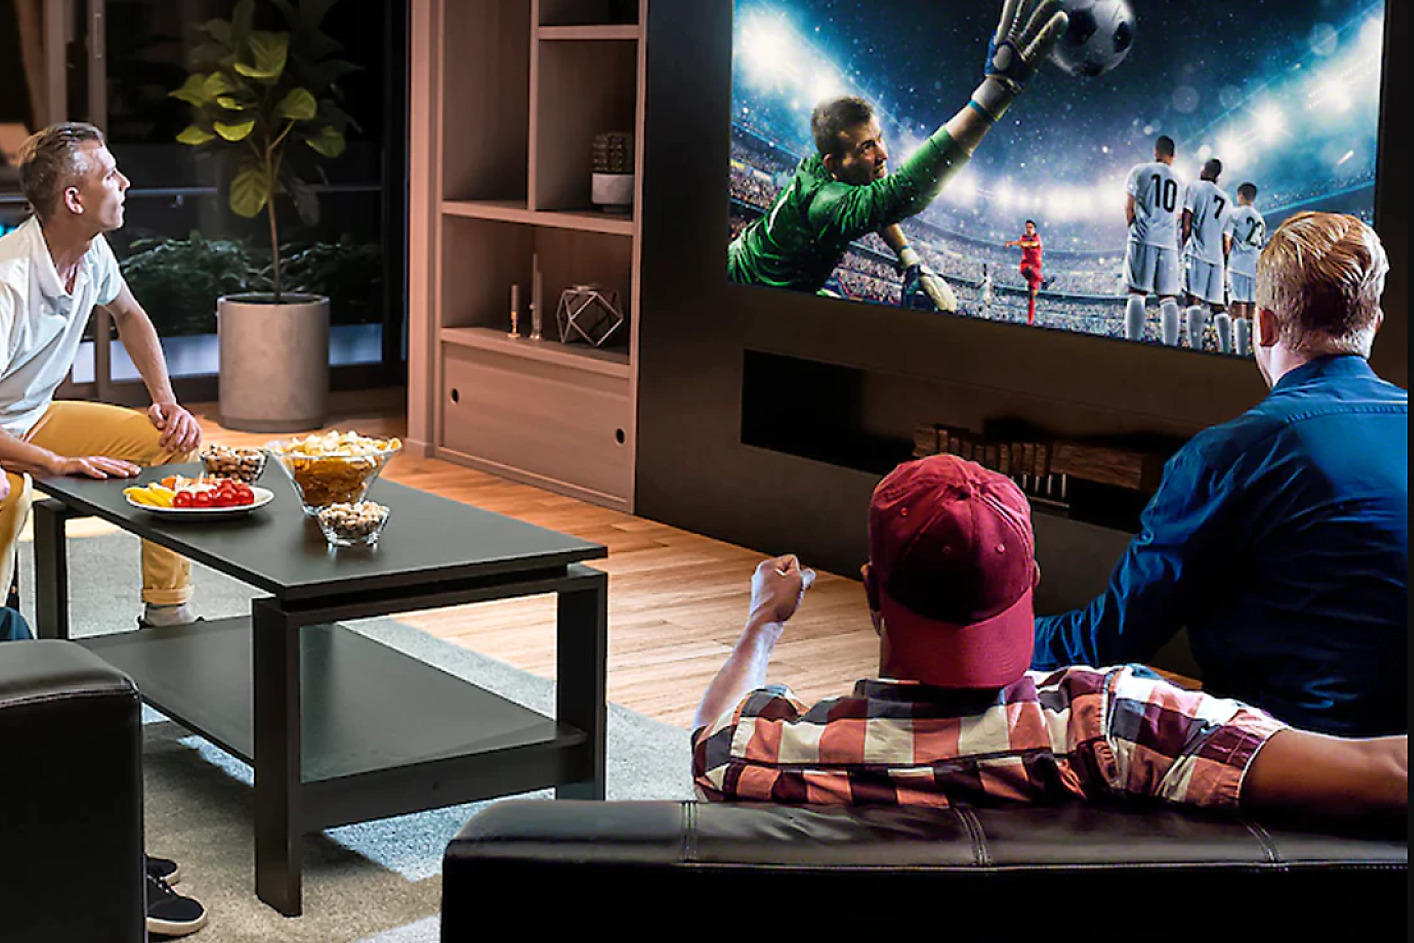 Drei Personen in einem Wohnzimmer blicken auf einen Fernseher, auf dem ein Torhüter zu sehen ist, der sich im Sprung befindet, um einen Fußball zu halten.